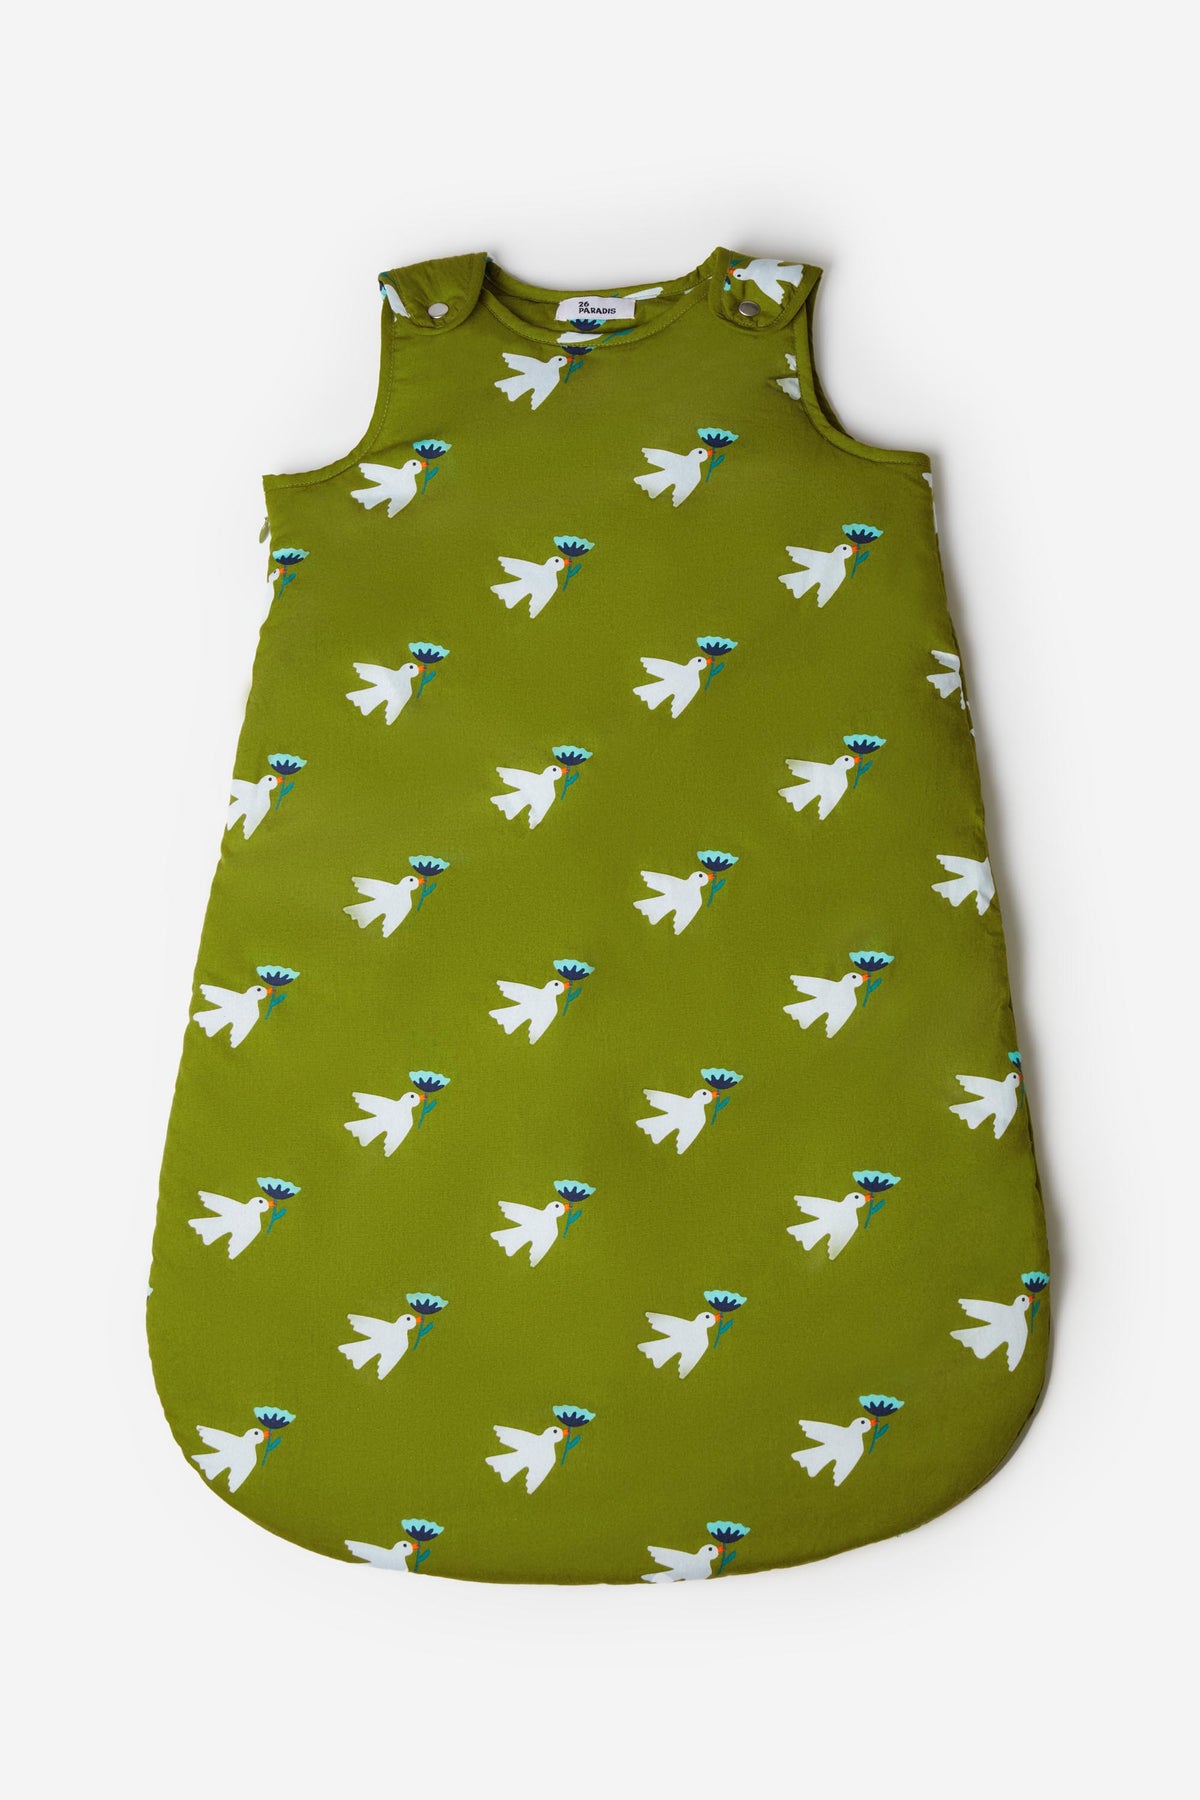 Découvrez notre gigoteuse en coton avec le motif allover oiseau, design et confortable pour les bébés de 6 à 18 mois.26 PARADIS